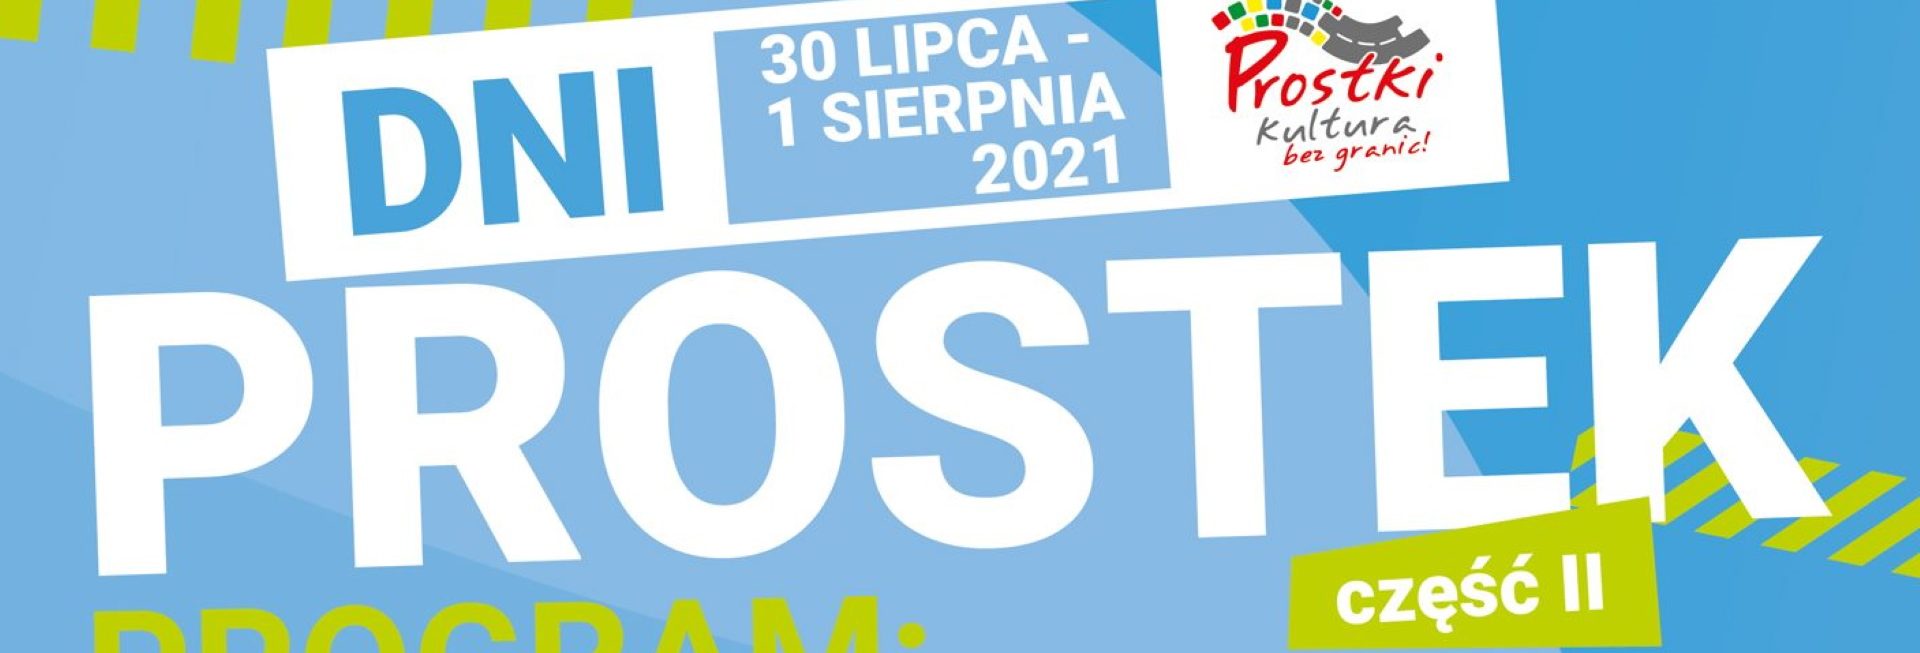 Plakat graficzny zapraszający do miejscowości Prostki na 22. edycję Dni Prostek 2021. Na plakacie napisy na niebieskim tle.